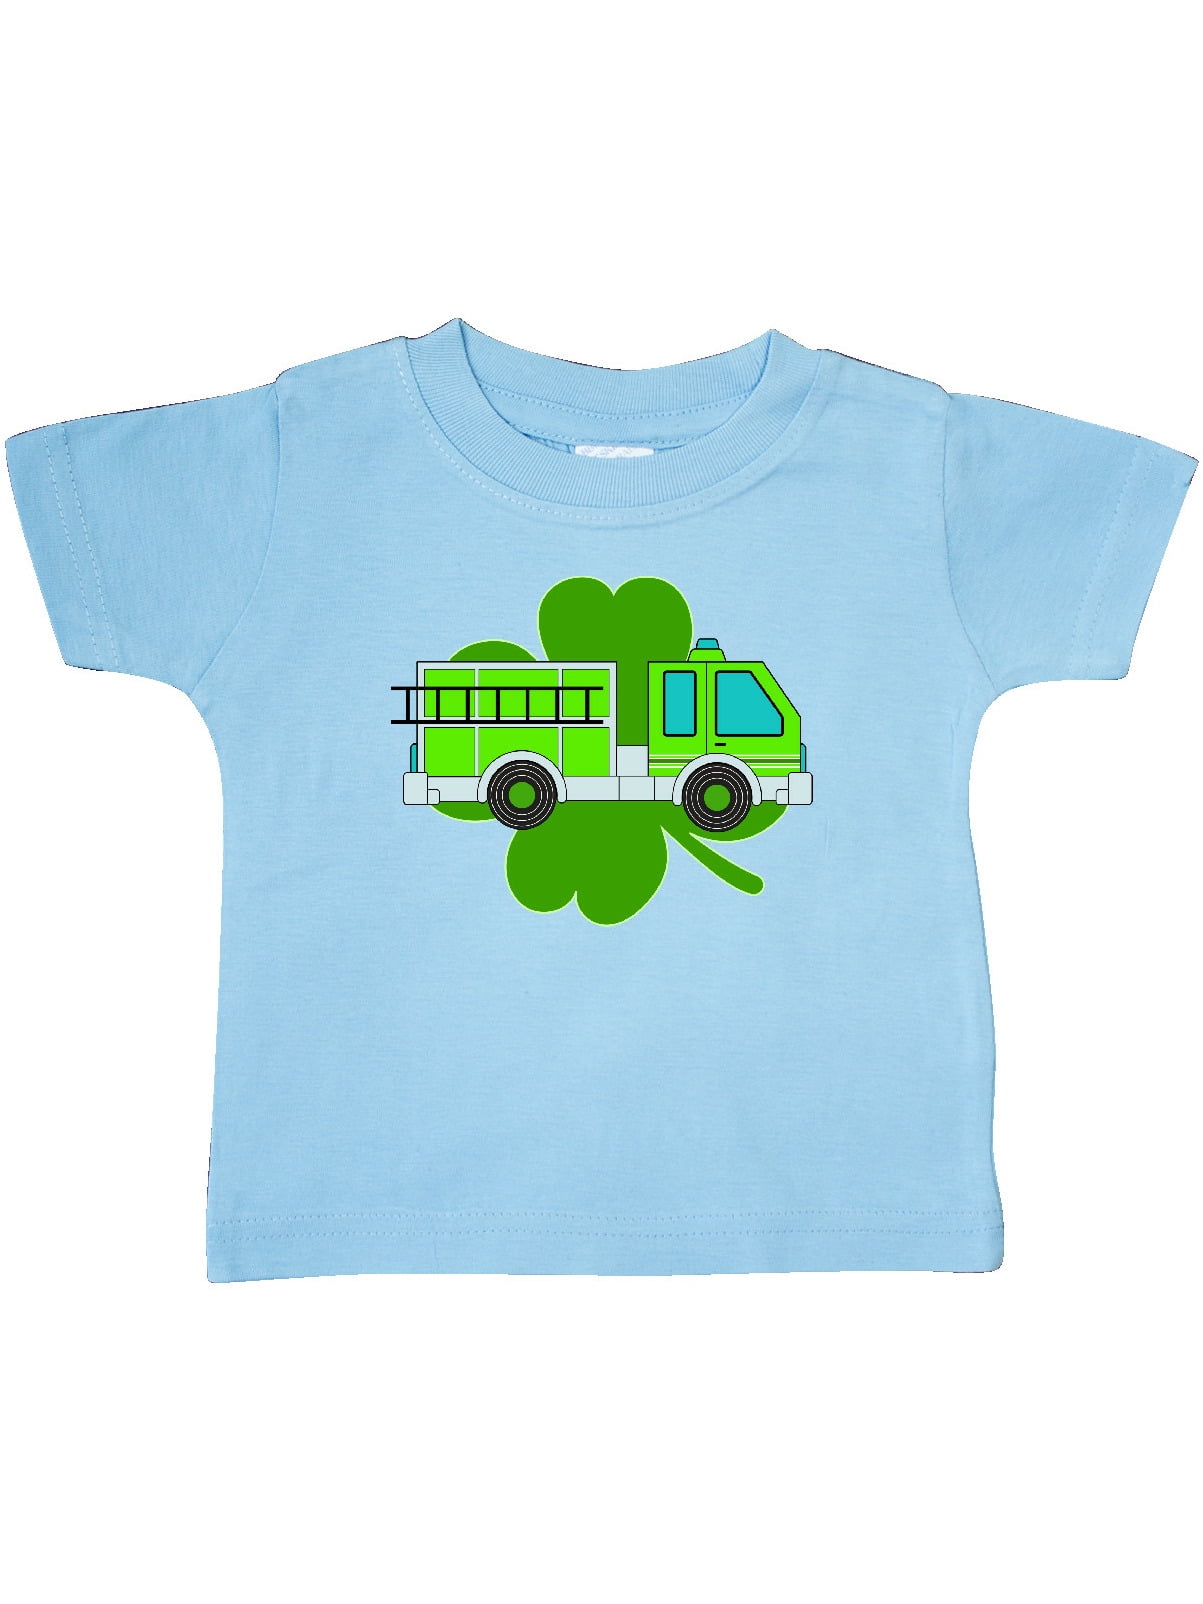 Clover Infant T Shirt Uni Light Blue, Green And Blue Lights On Fire Truck